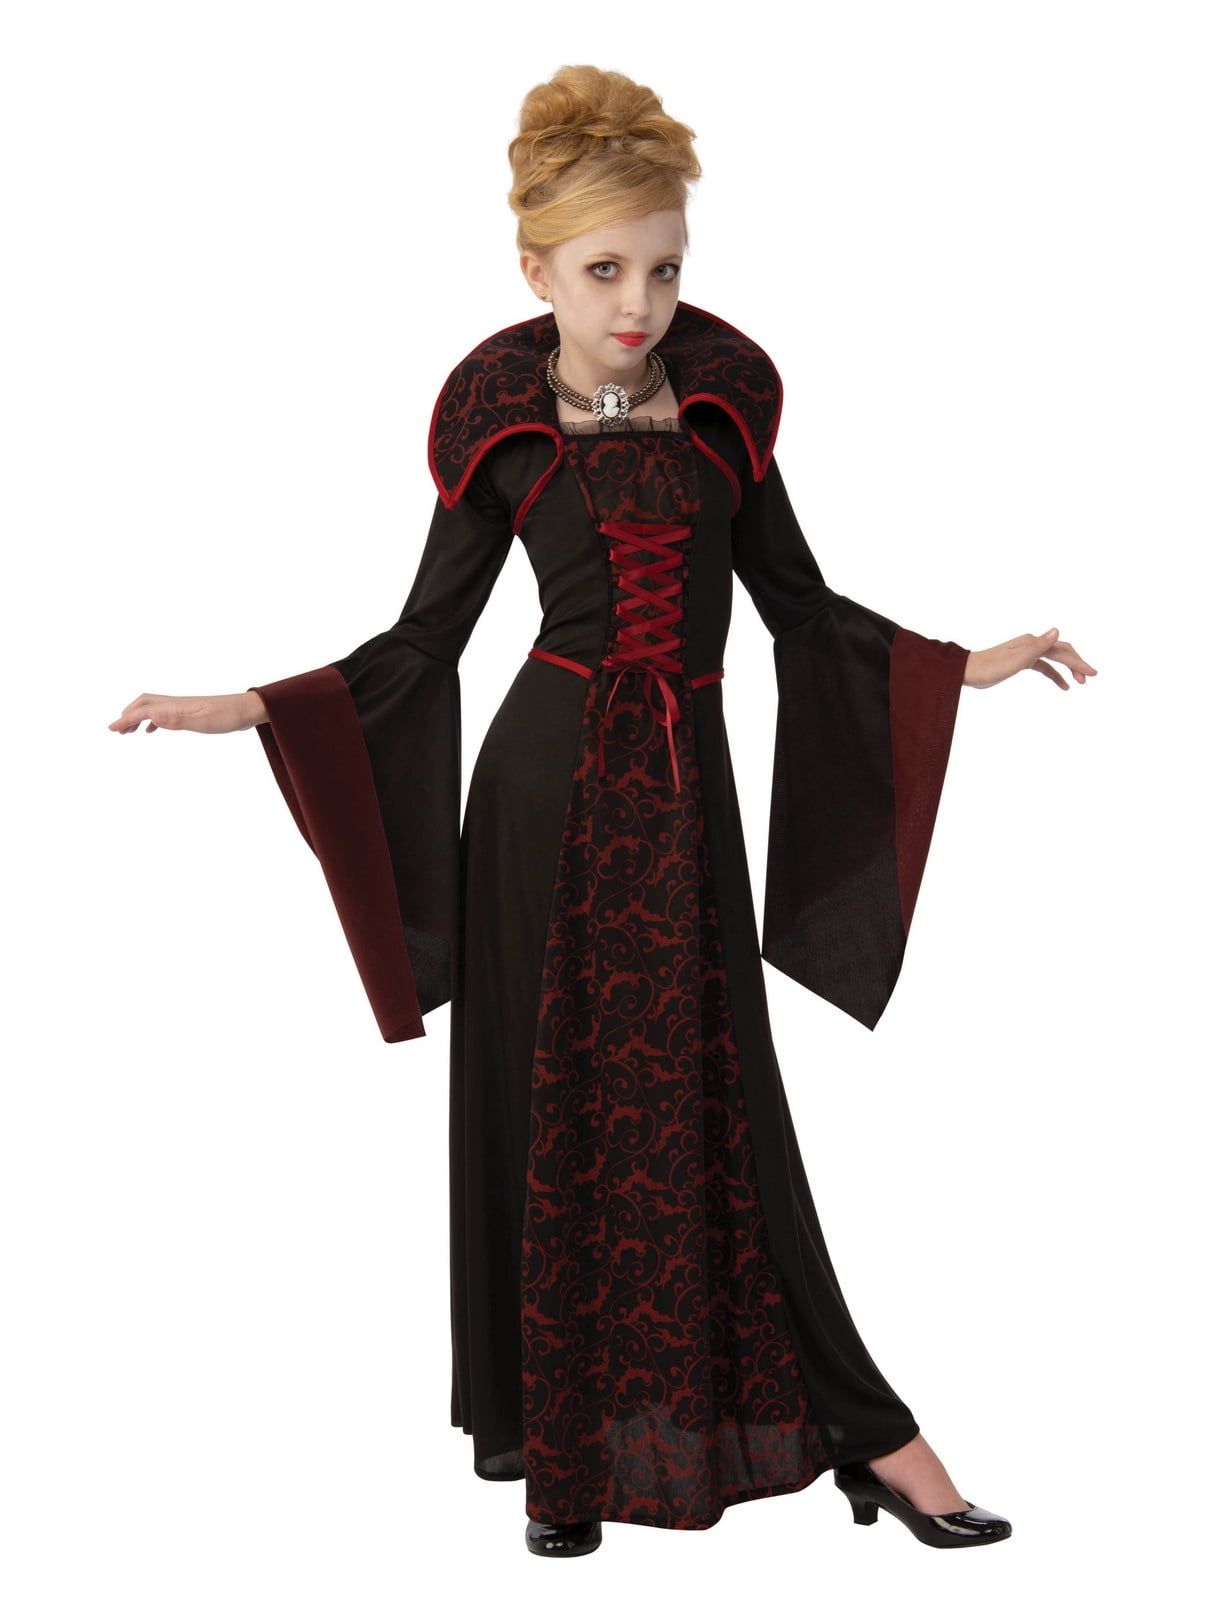 Girls Royal Vampire Costume - Walmart.com